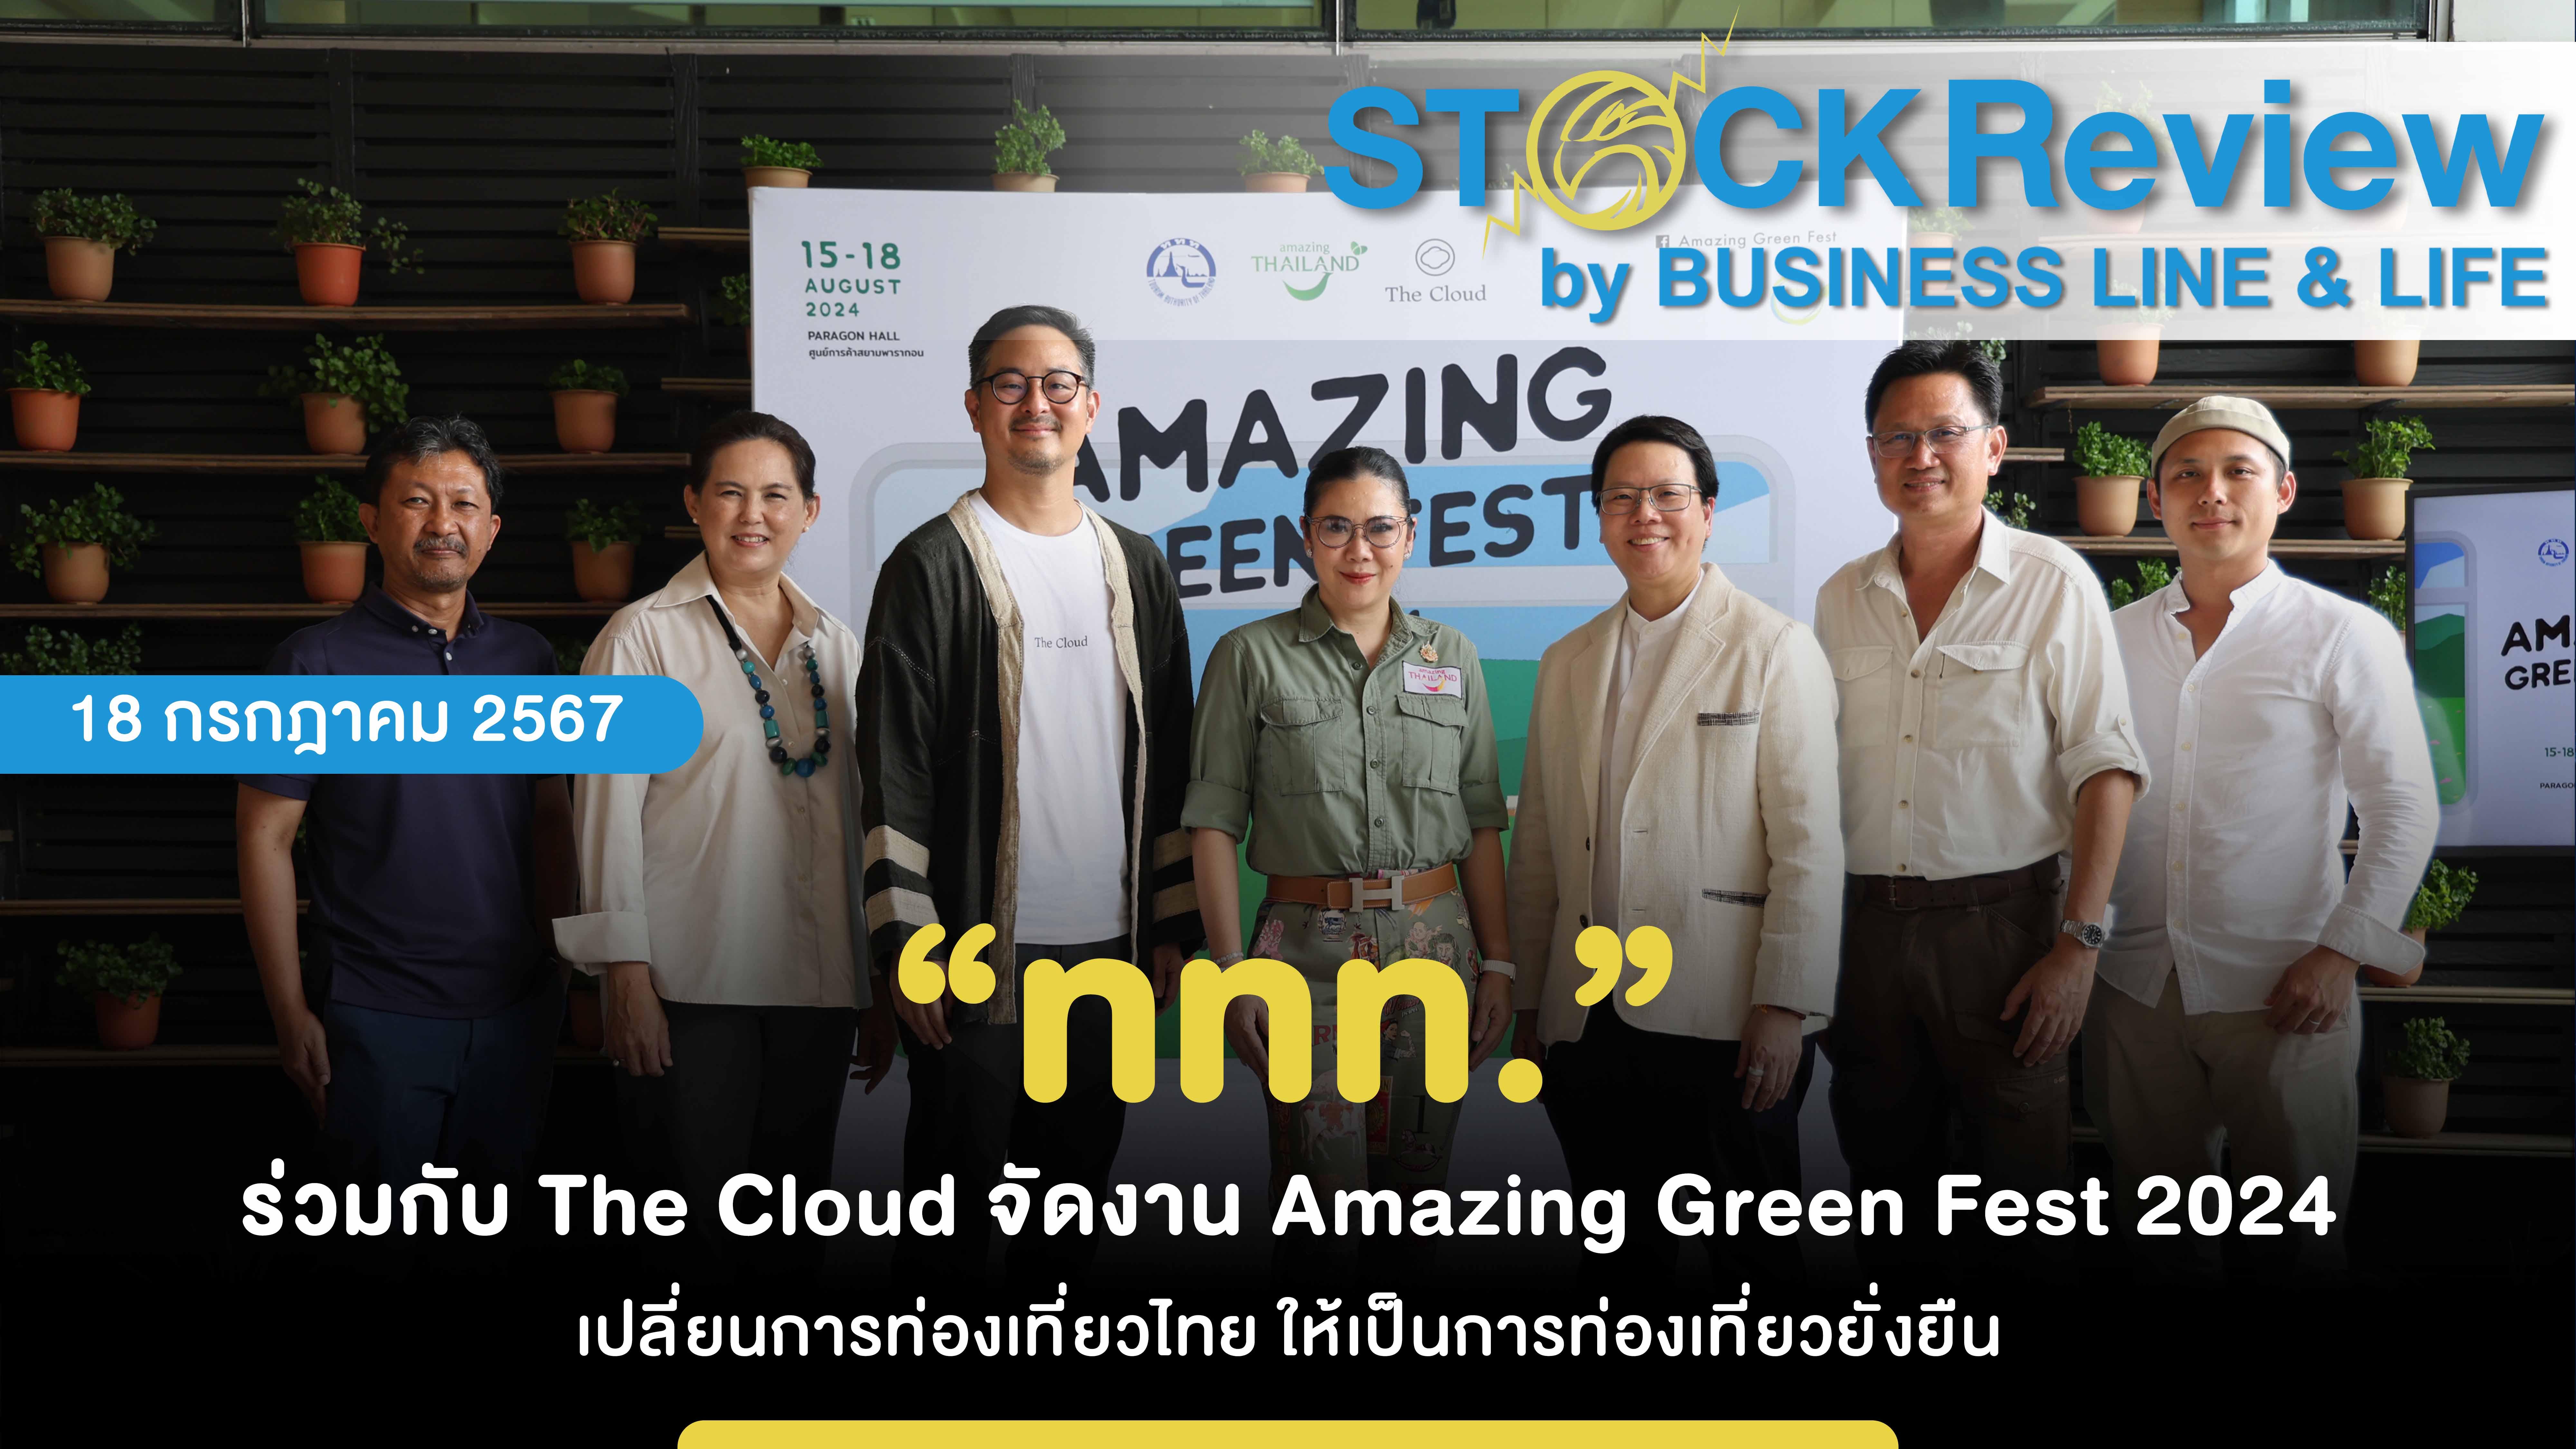 “ททท.” ร่วมกับ The Cloud จัดงาน Amazing Green Fest 2024 เปลี่ยนการท่องเที่ยวไทย ให้เป็นการท่องเที่ยวยั่งยืน